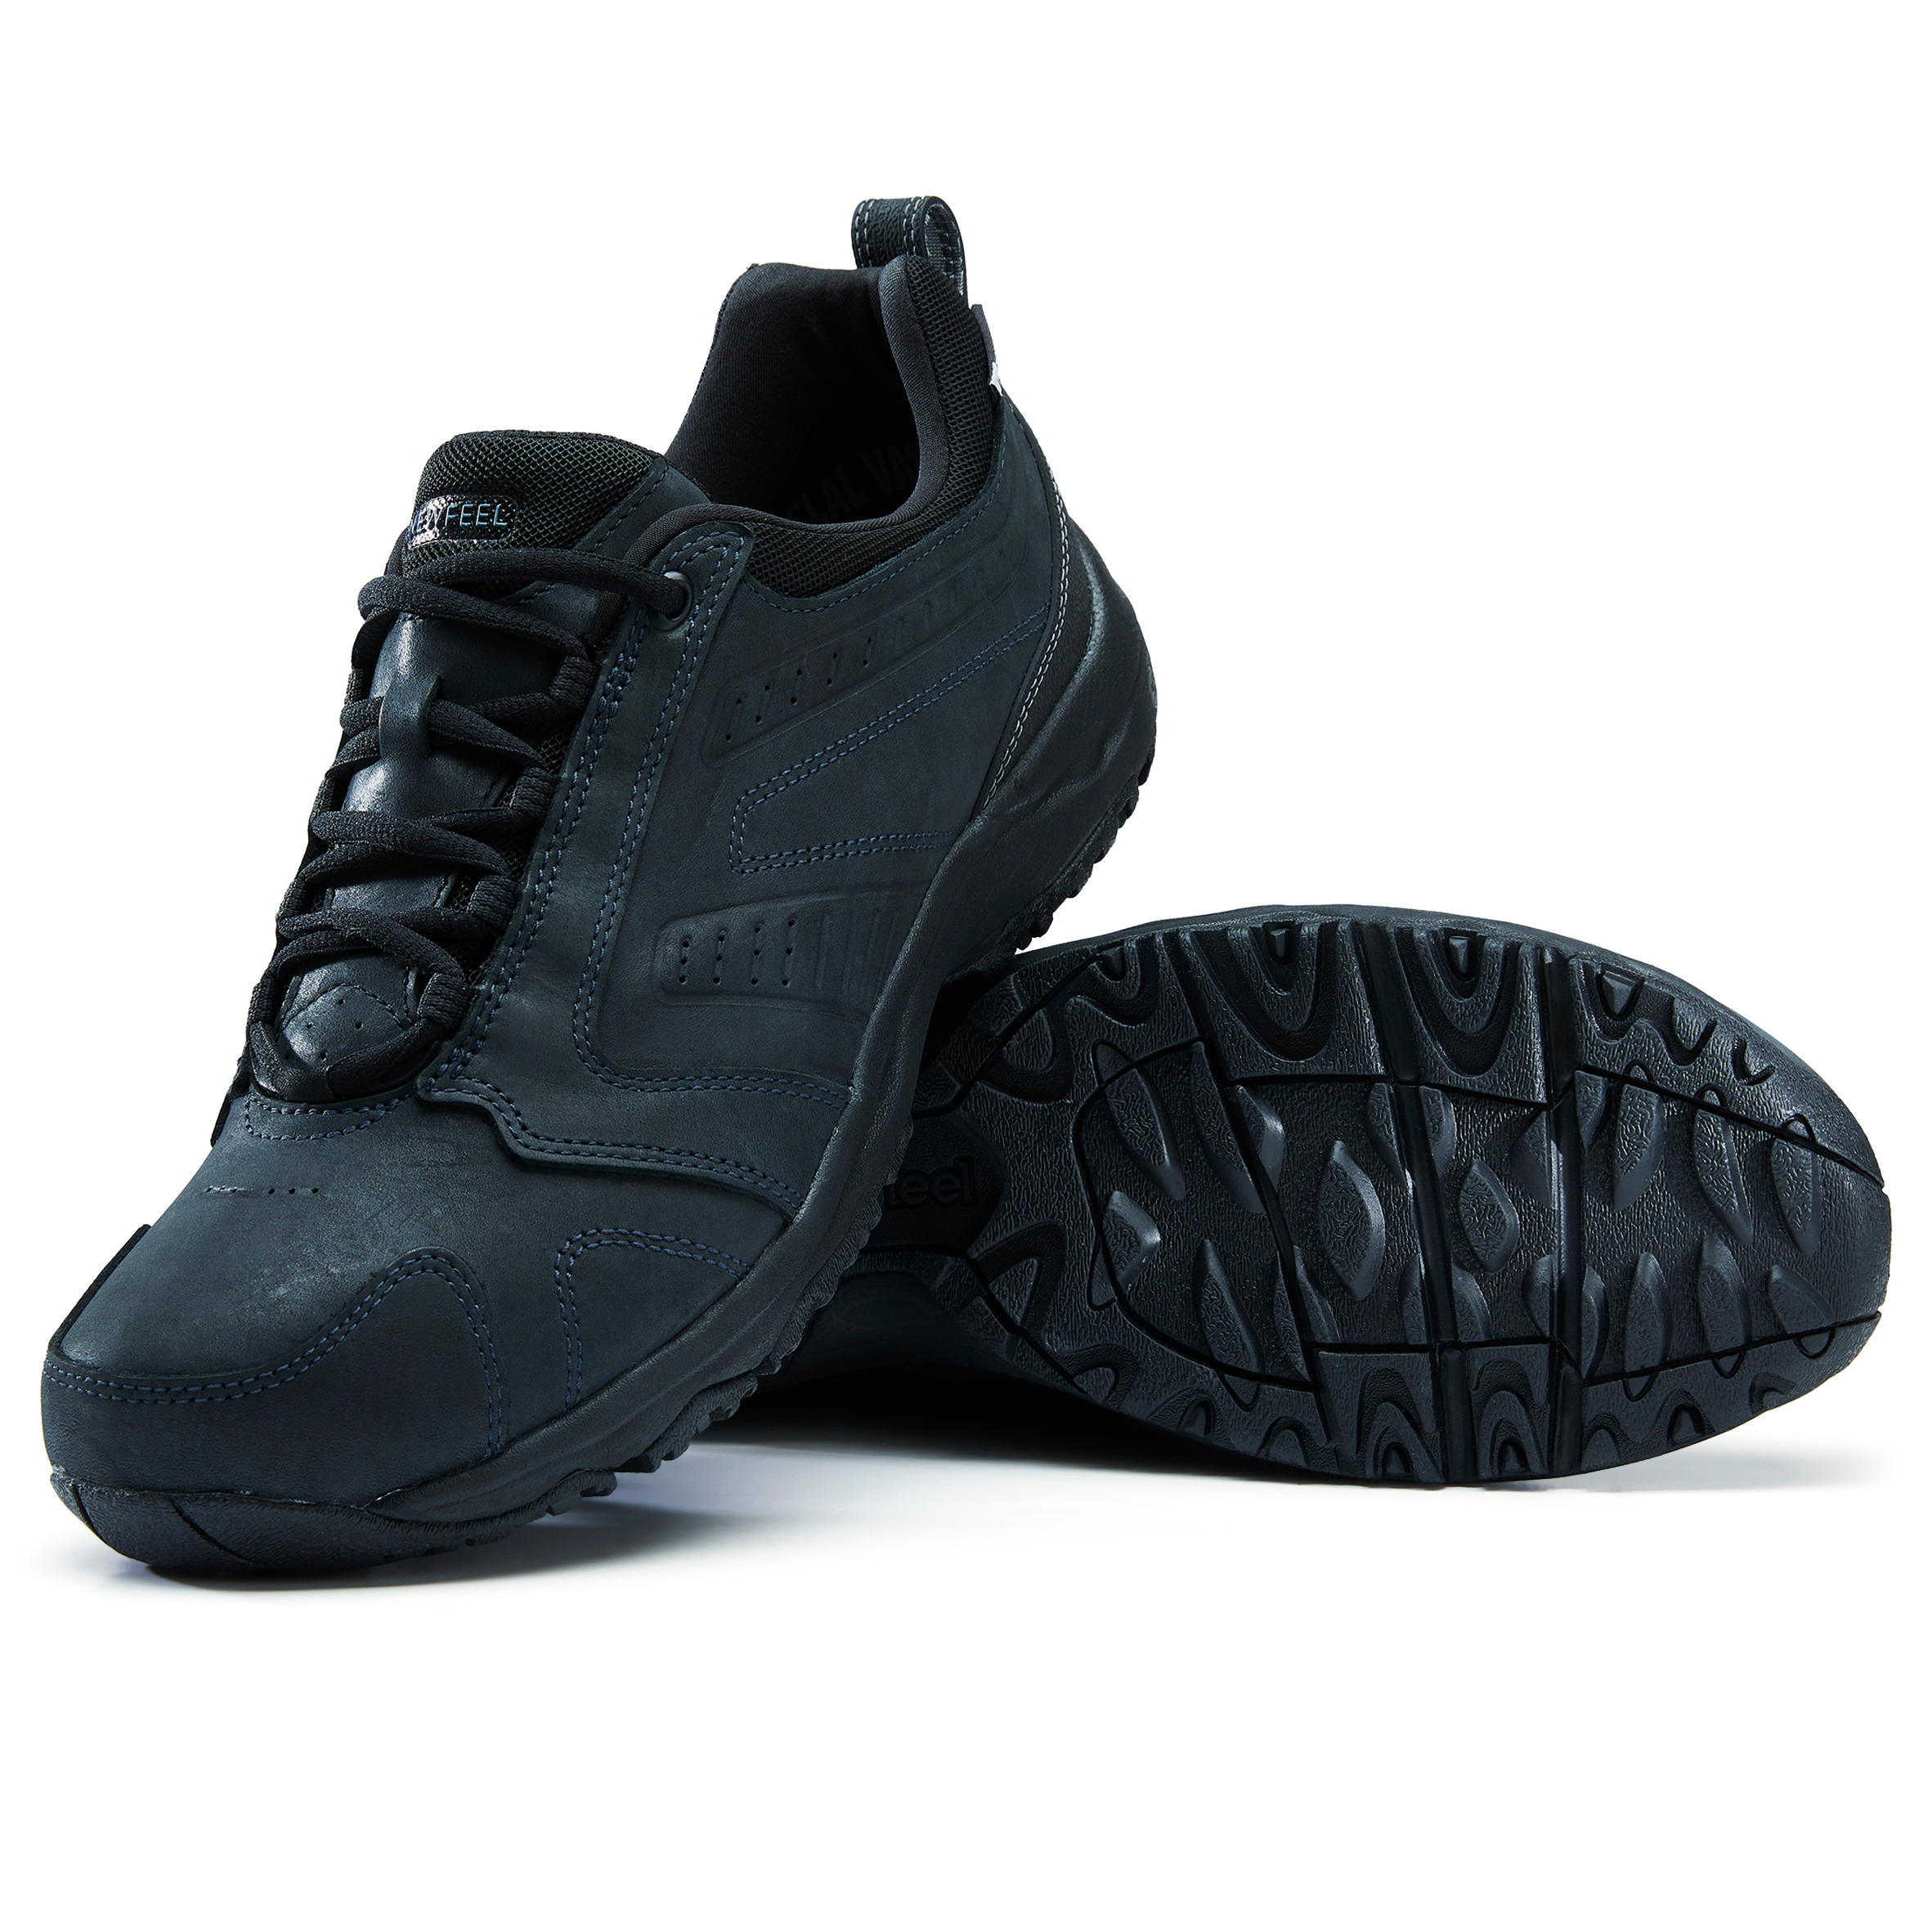 Nakuru Waterproof Men's Urban Waterproof Walking Shoes - Black Leather 13/25